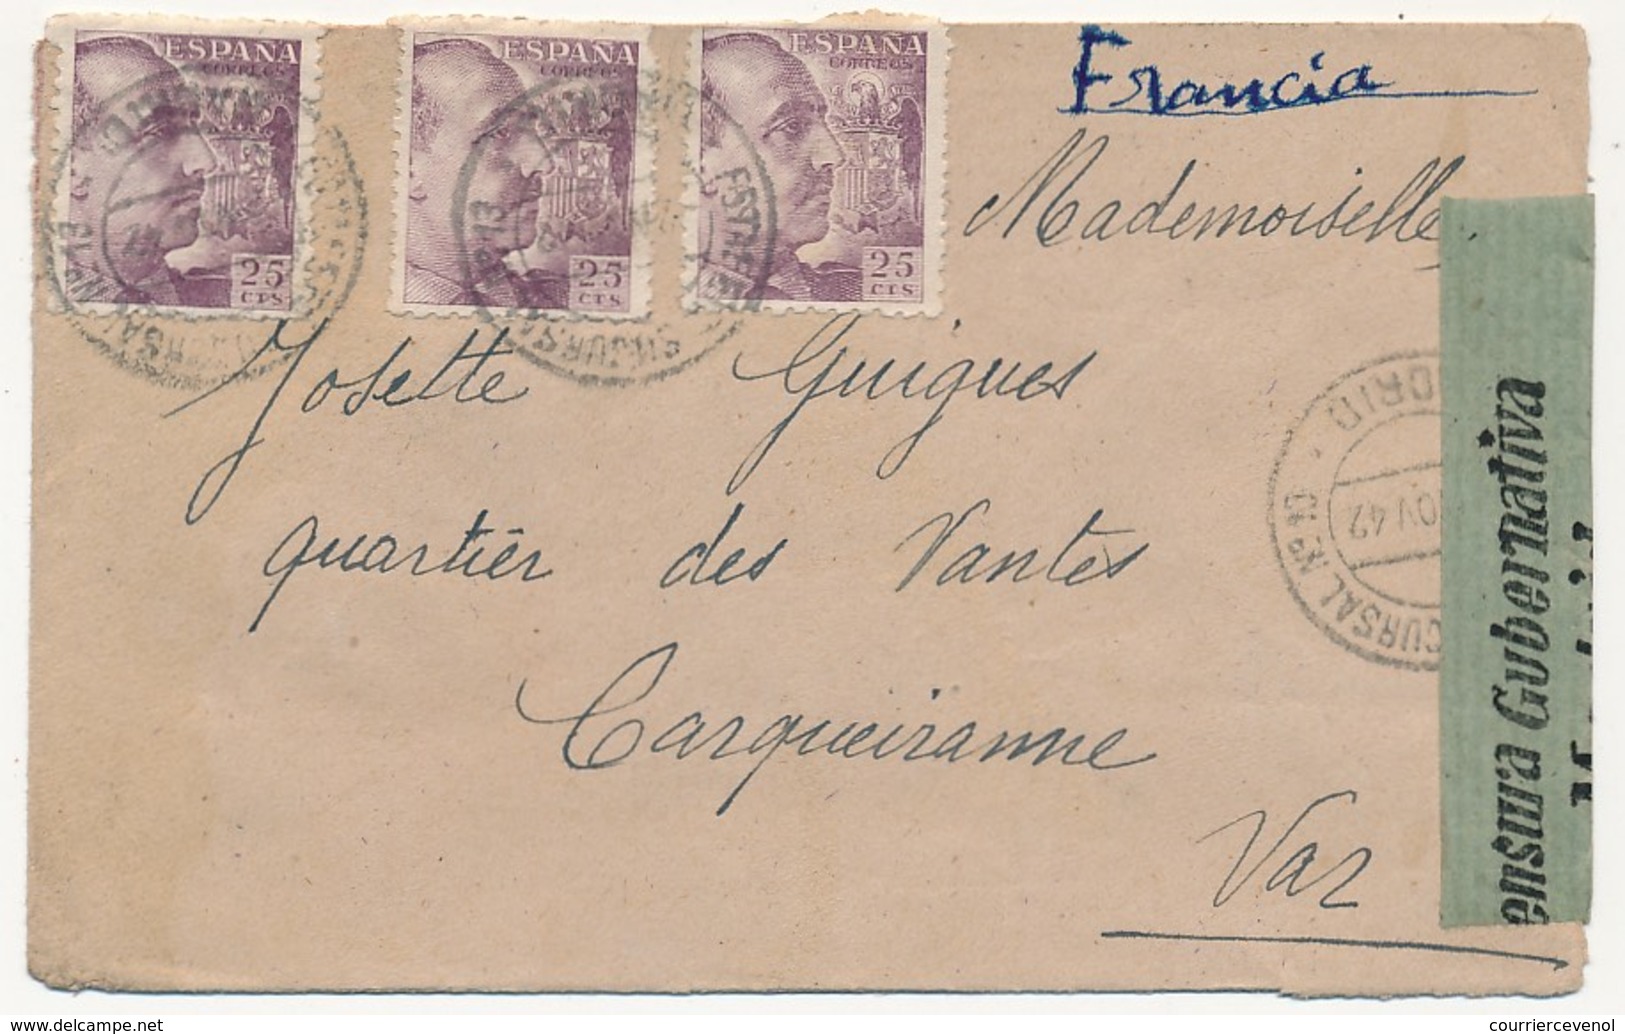 ESPAGNE - Enveloppe Censurée De Madrid, Bande "Censura Gubernativa Madrid" 1942 - Cartas & Documentos